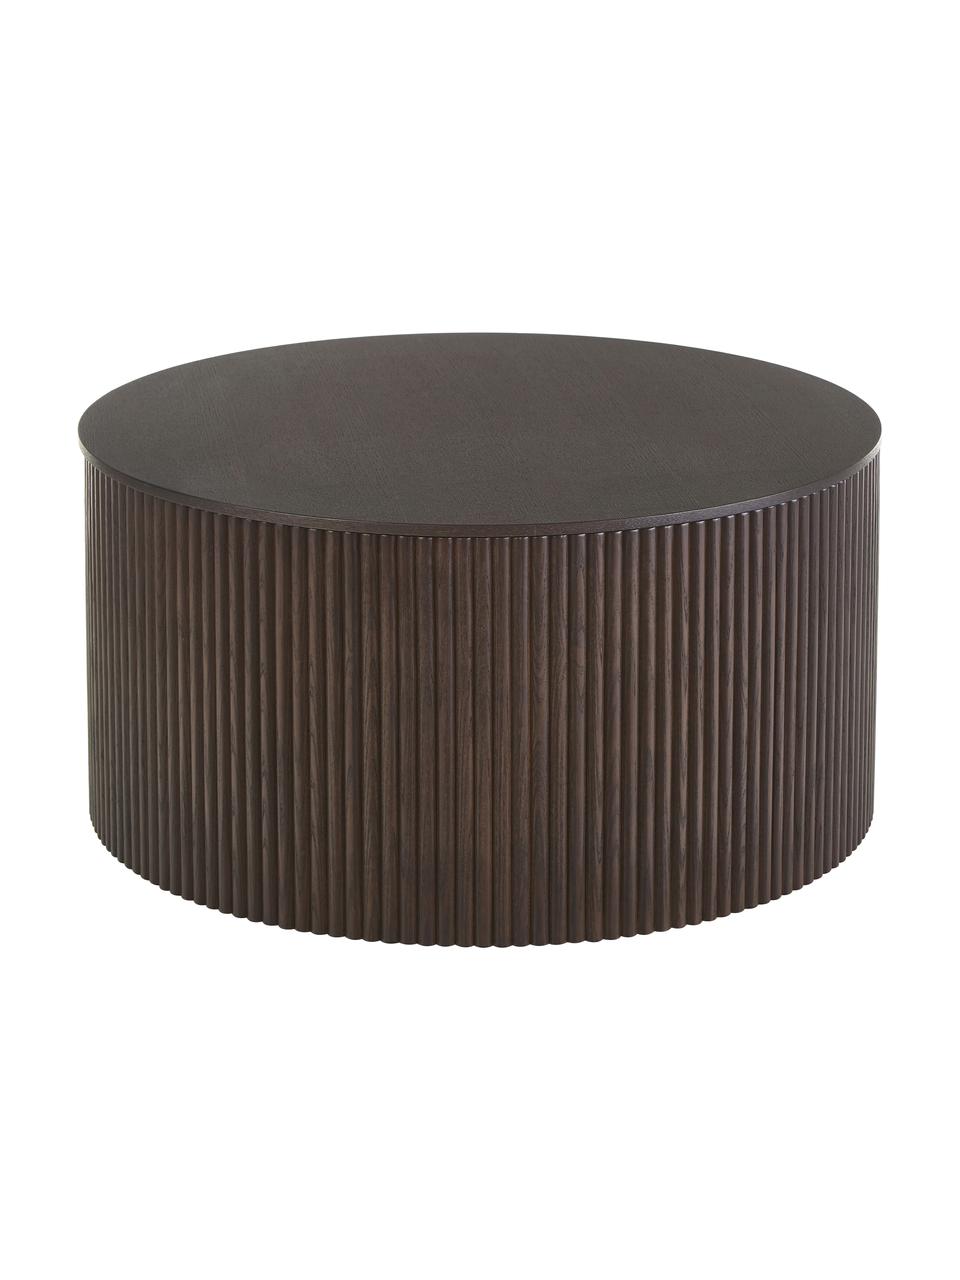 Table basse ronde avec rangement Nele, MDF (panneau en fibres de bois à densité moyenne) avec placage en frêne, Bois foncé, Ø 70 x haut. 36 cm